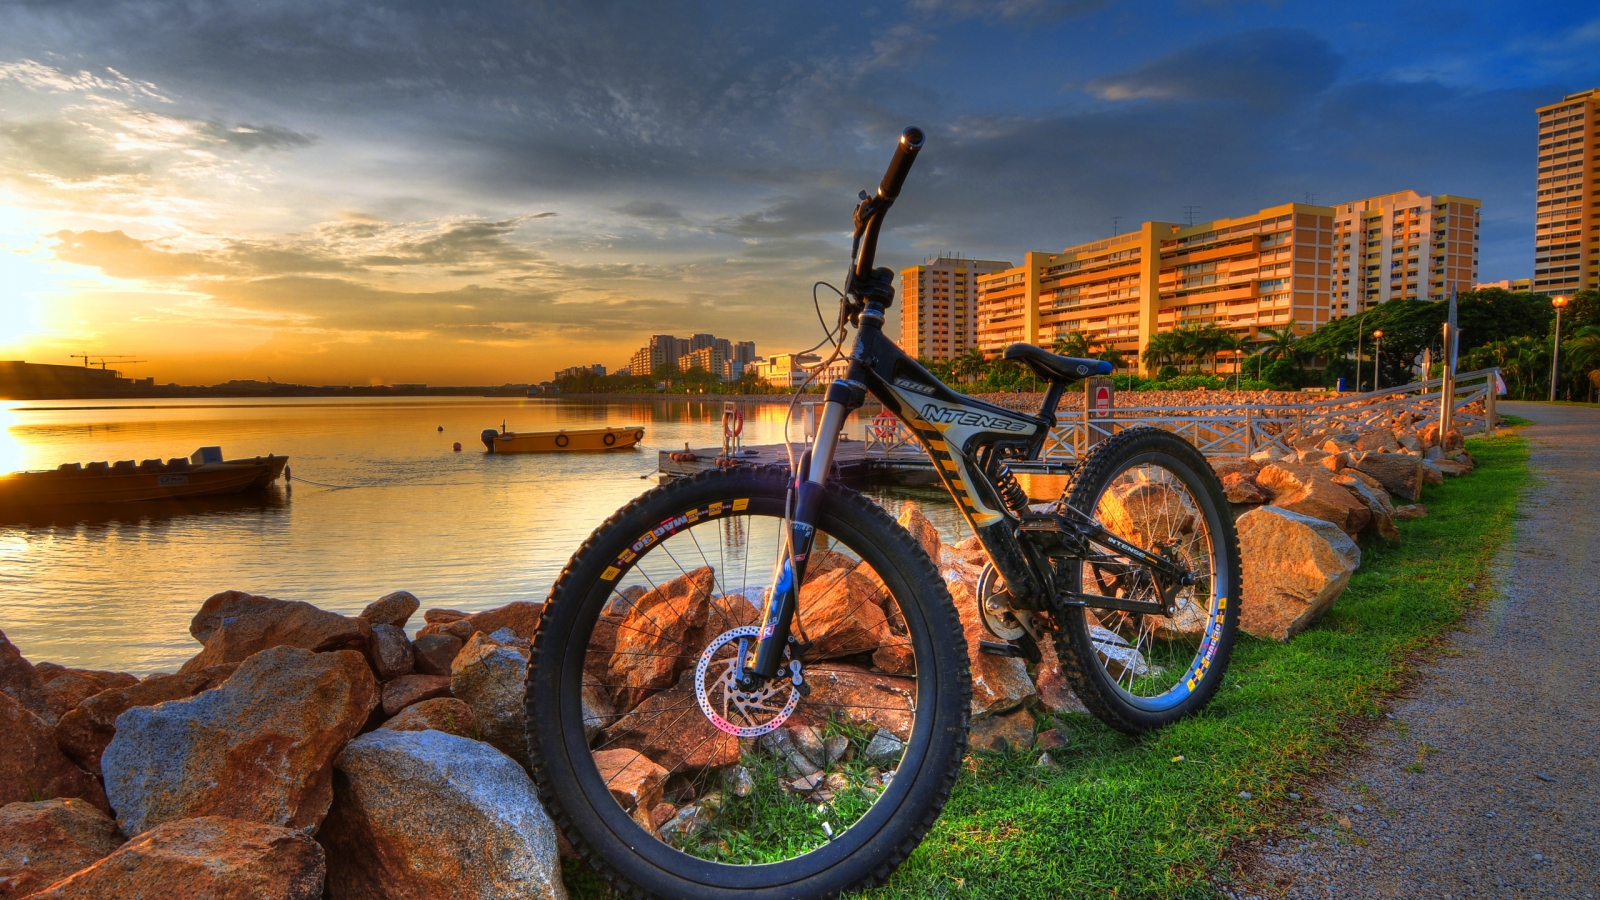 HDR City Bike for 1600 x 900 HDTV resolution